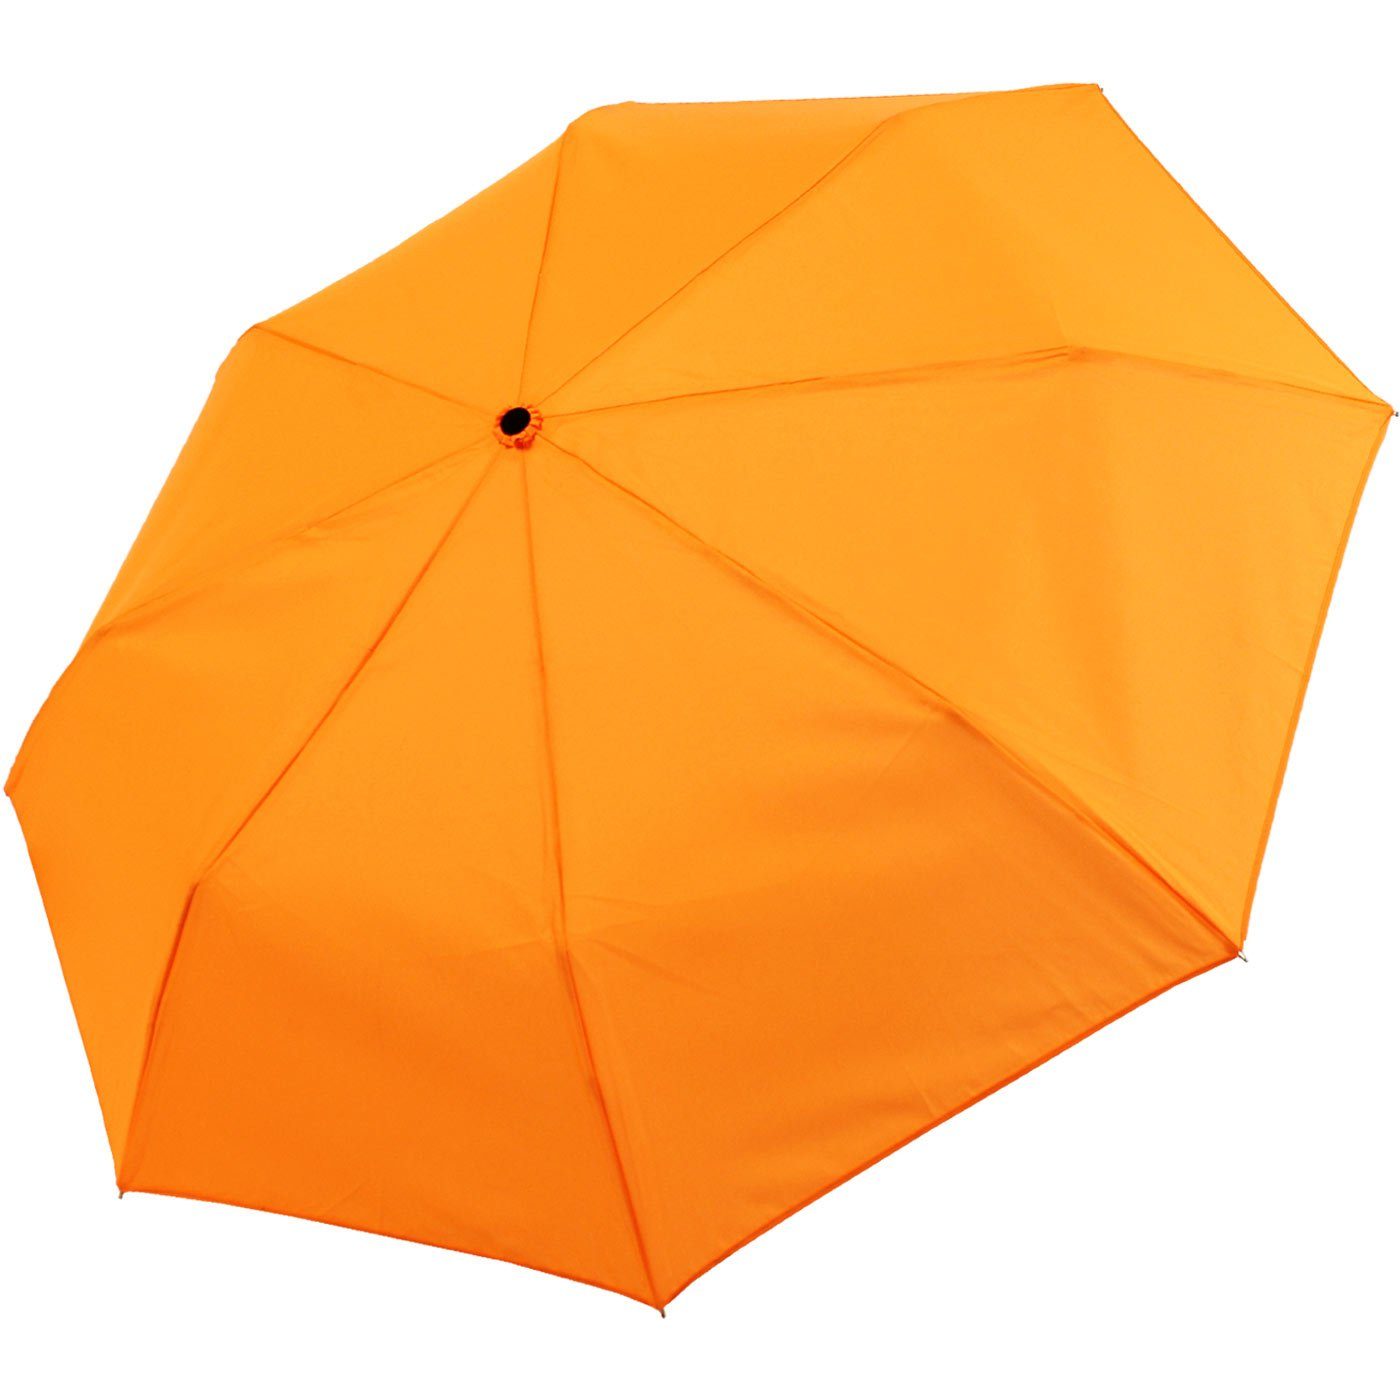 mit - Mini Ultra Taschenregenschirm extra leicht, großem Light - Dach iX-brella neon-orange farbenfroh